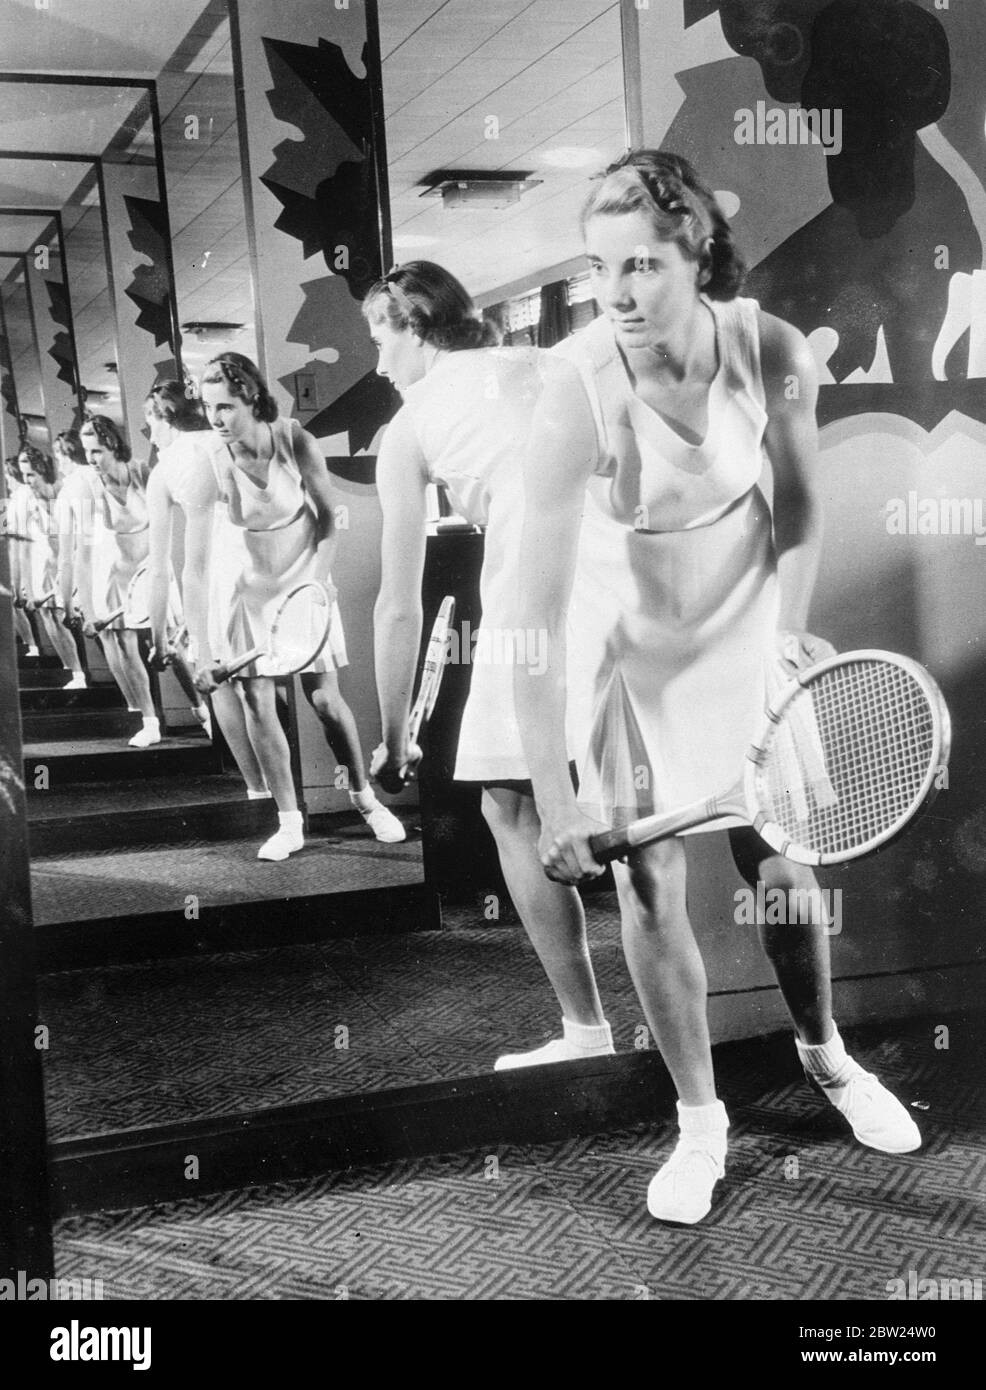 Kay Stammers conçoit sa propre robe de tennis. Kay Stammers, la joueuse de tennis britannique attrayante, utilise une série de miroirs pour présenter une nouvelle robe de tennis qu'elle a conçue à New York. La robe de lin blanc bordée de rose. 5 septembre 1938 Banque D'Images